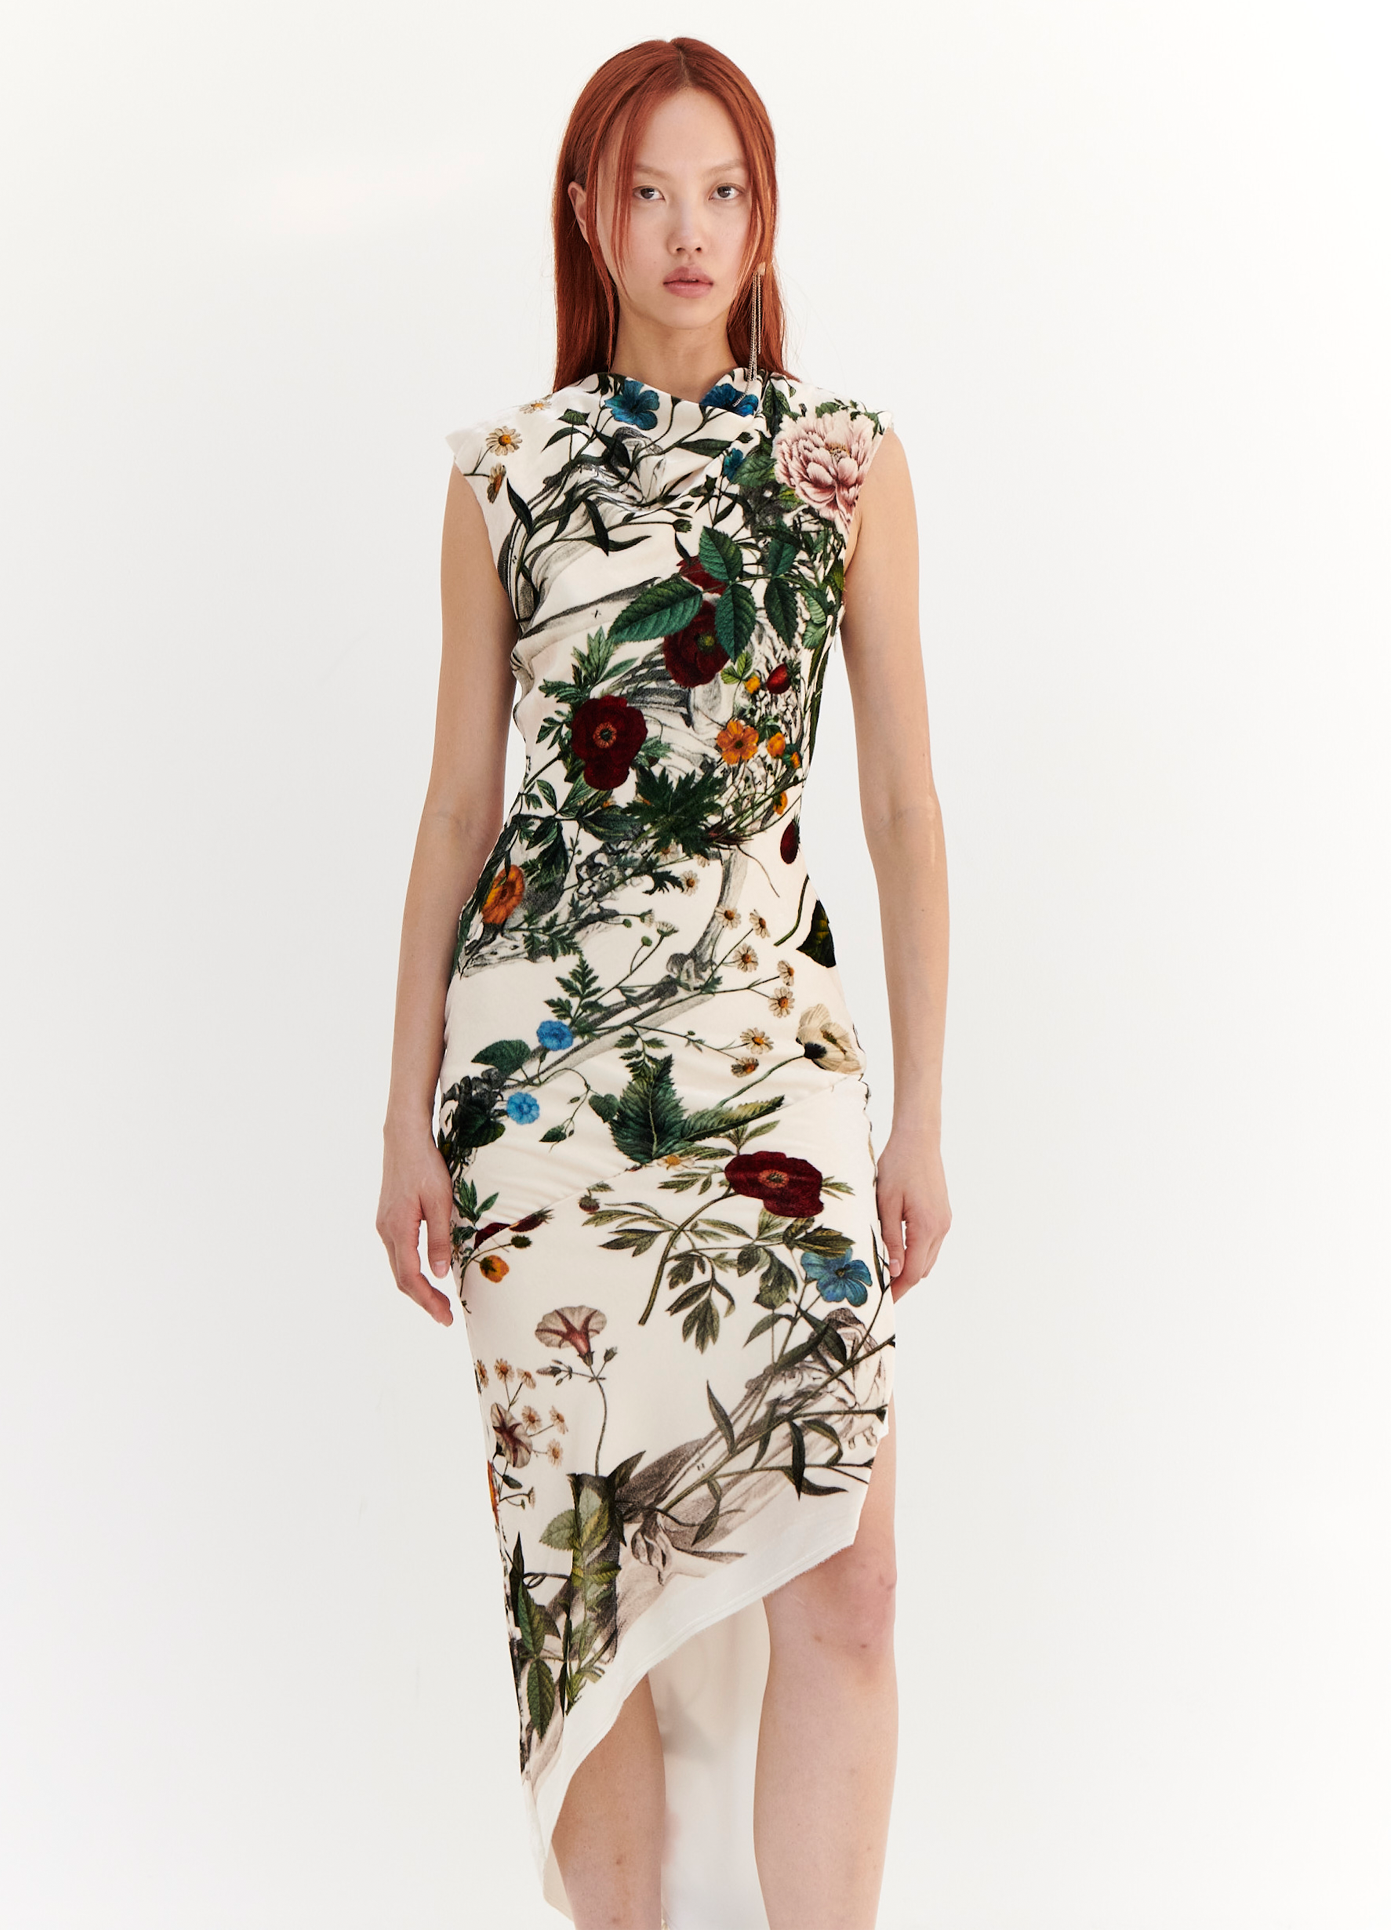 MONSE Velvet Floral Skeleton Print Dress in Ivory Multi on model front view